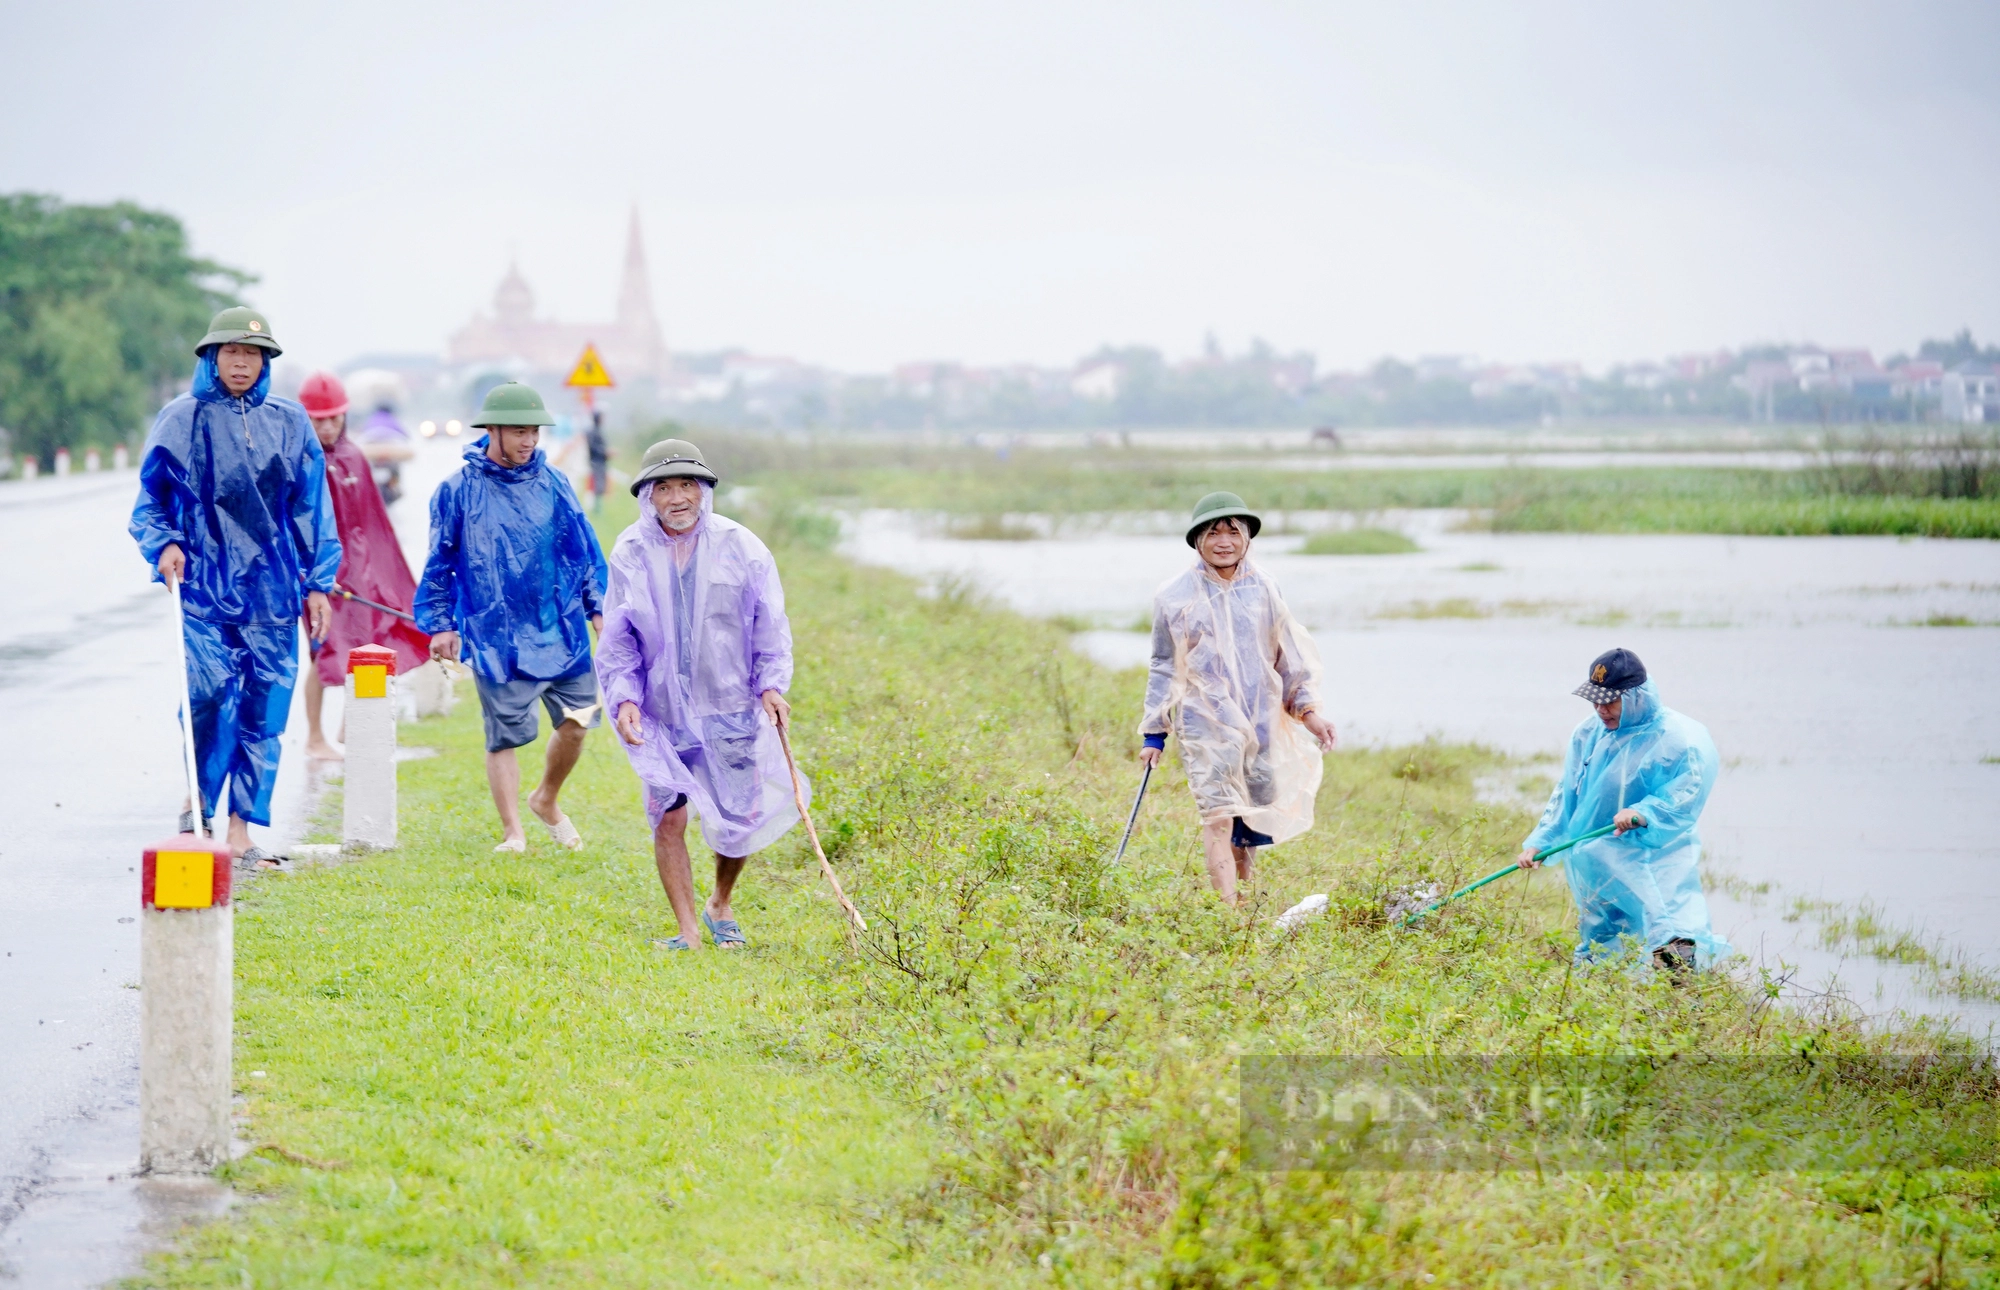 Cả làng ở Hà Tĩnh “đội mưa” cùng nhau lội nước đi bắt chuột bảo vệ mùa màng - Ảnh 2.